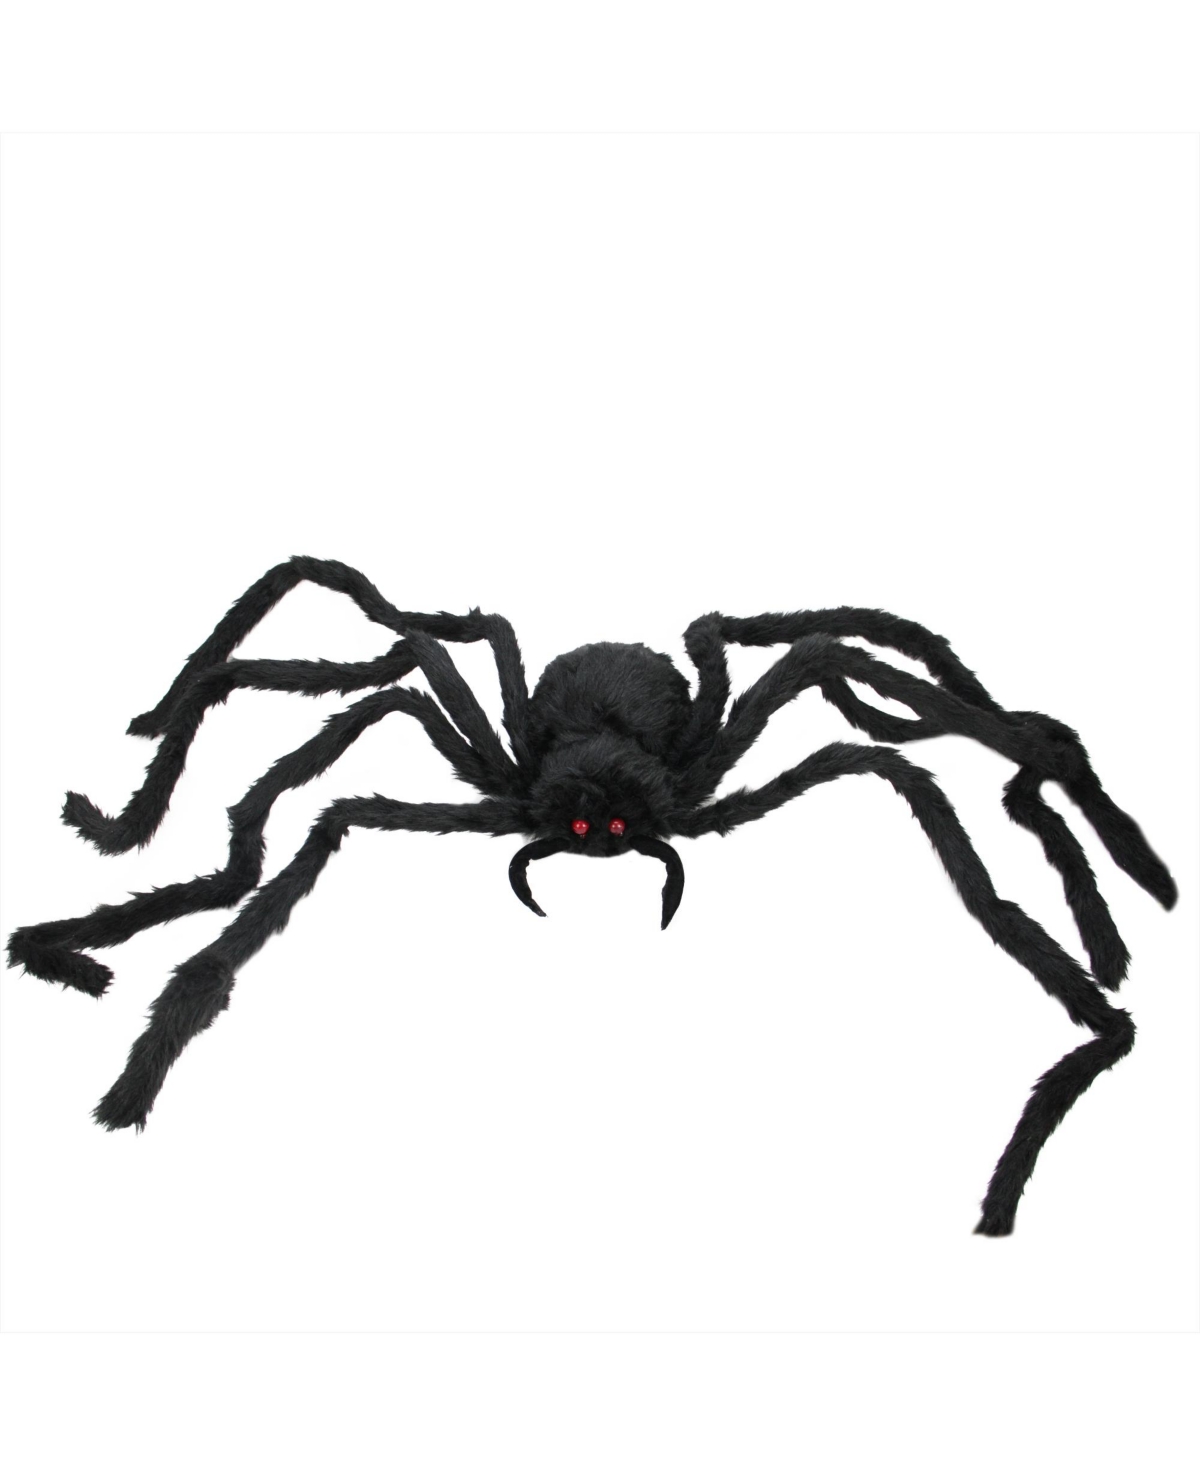 48" Spider with Led Flashing Eyes Halloween Decoration - Black